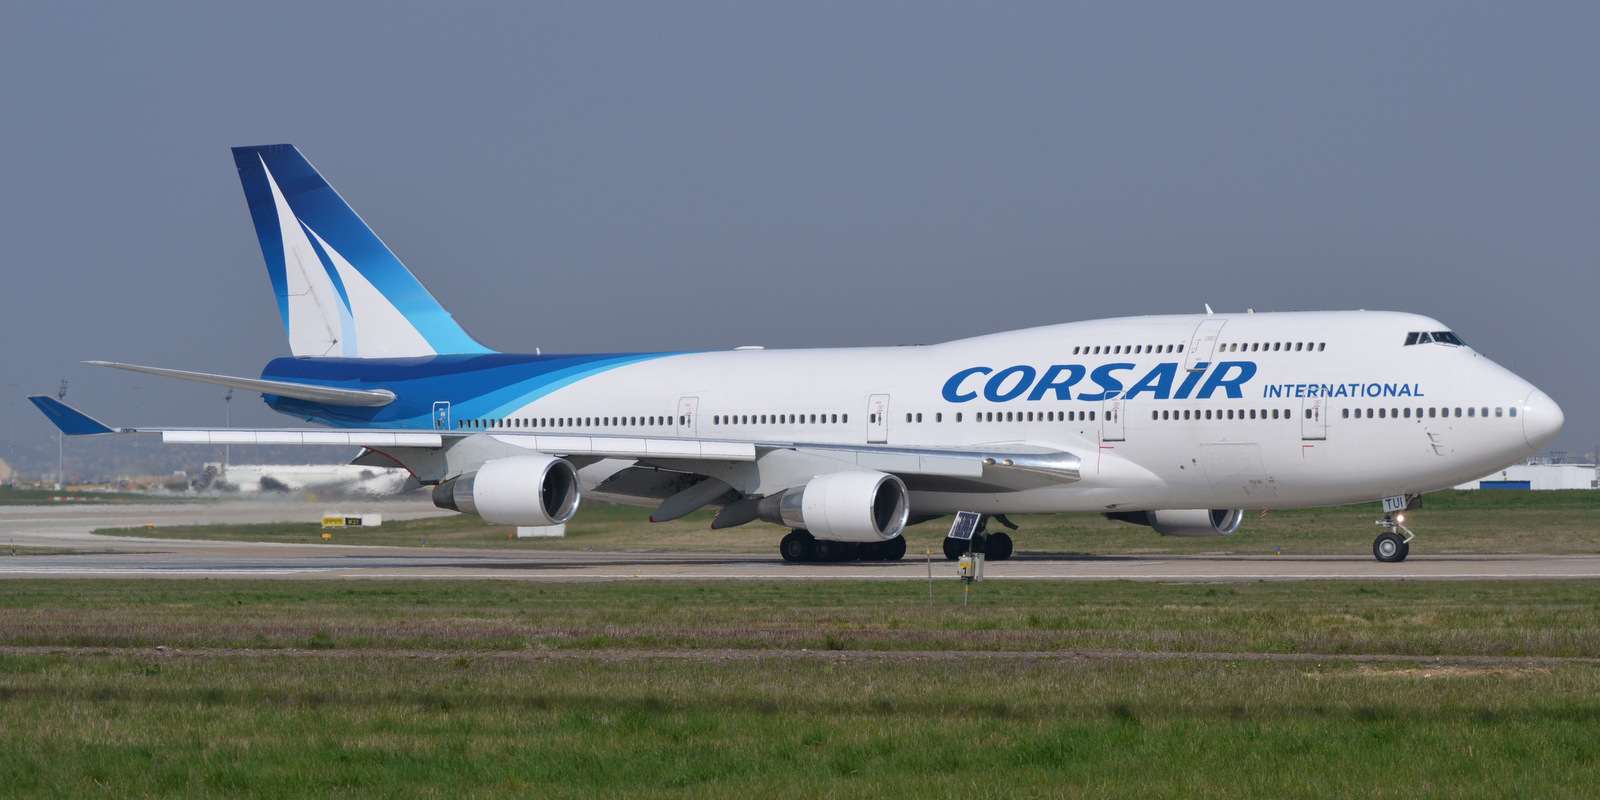     Le dernier 747 de Corsair a effectué son ultime vol

